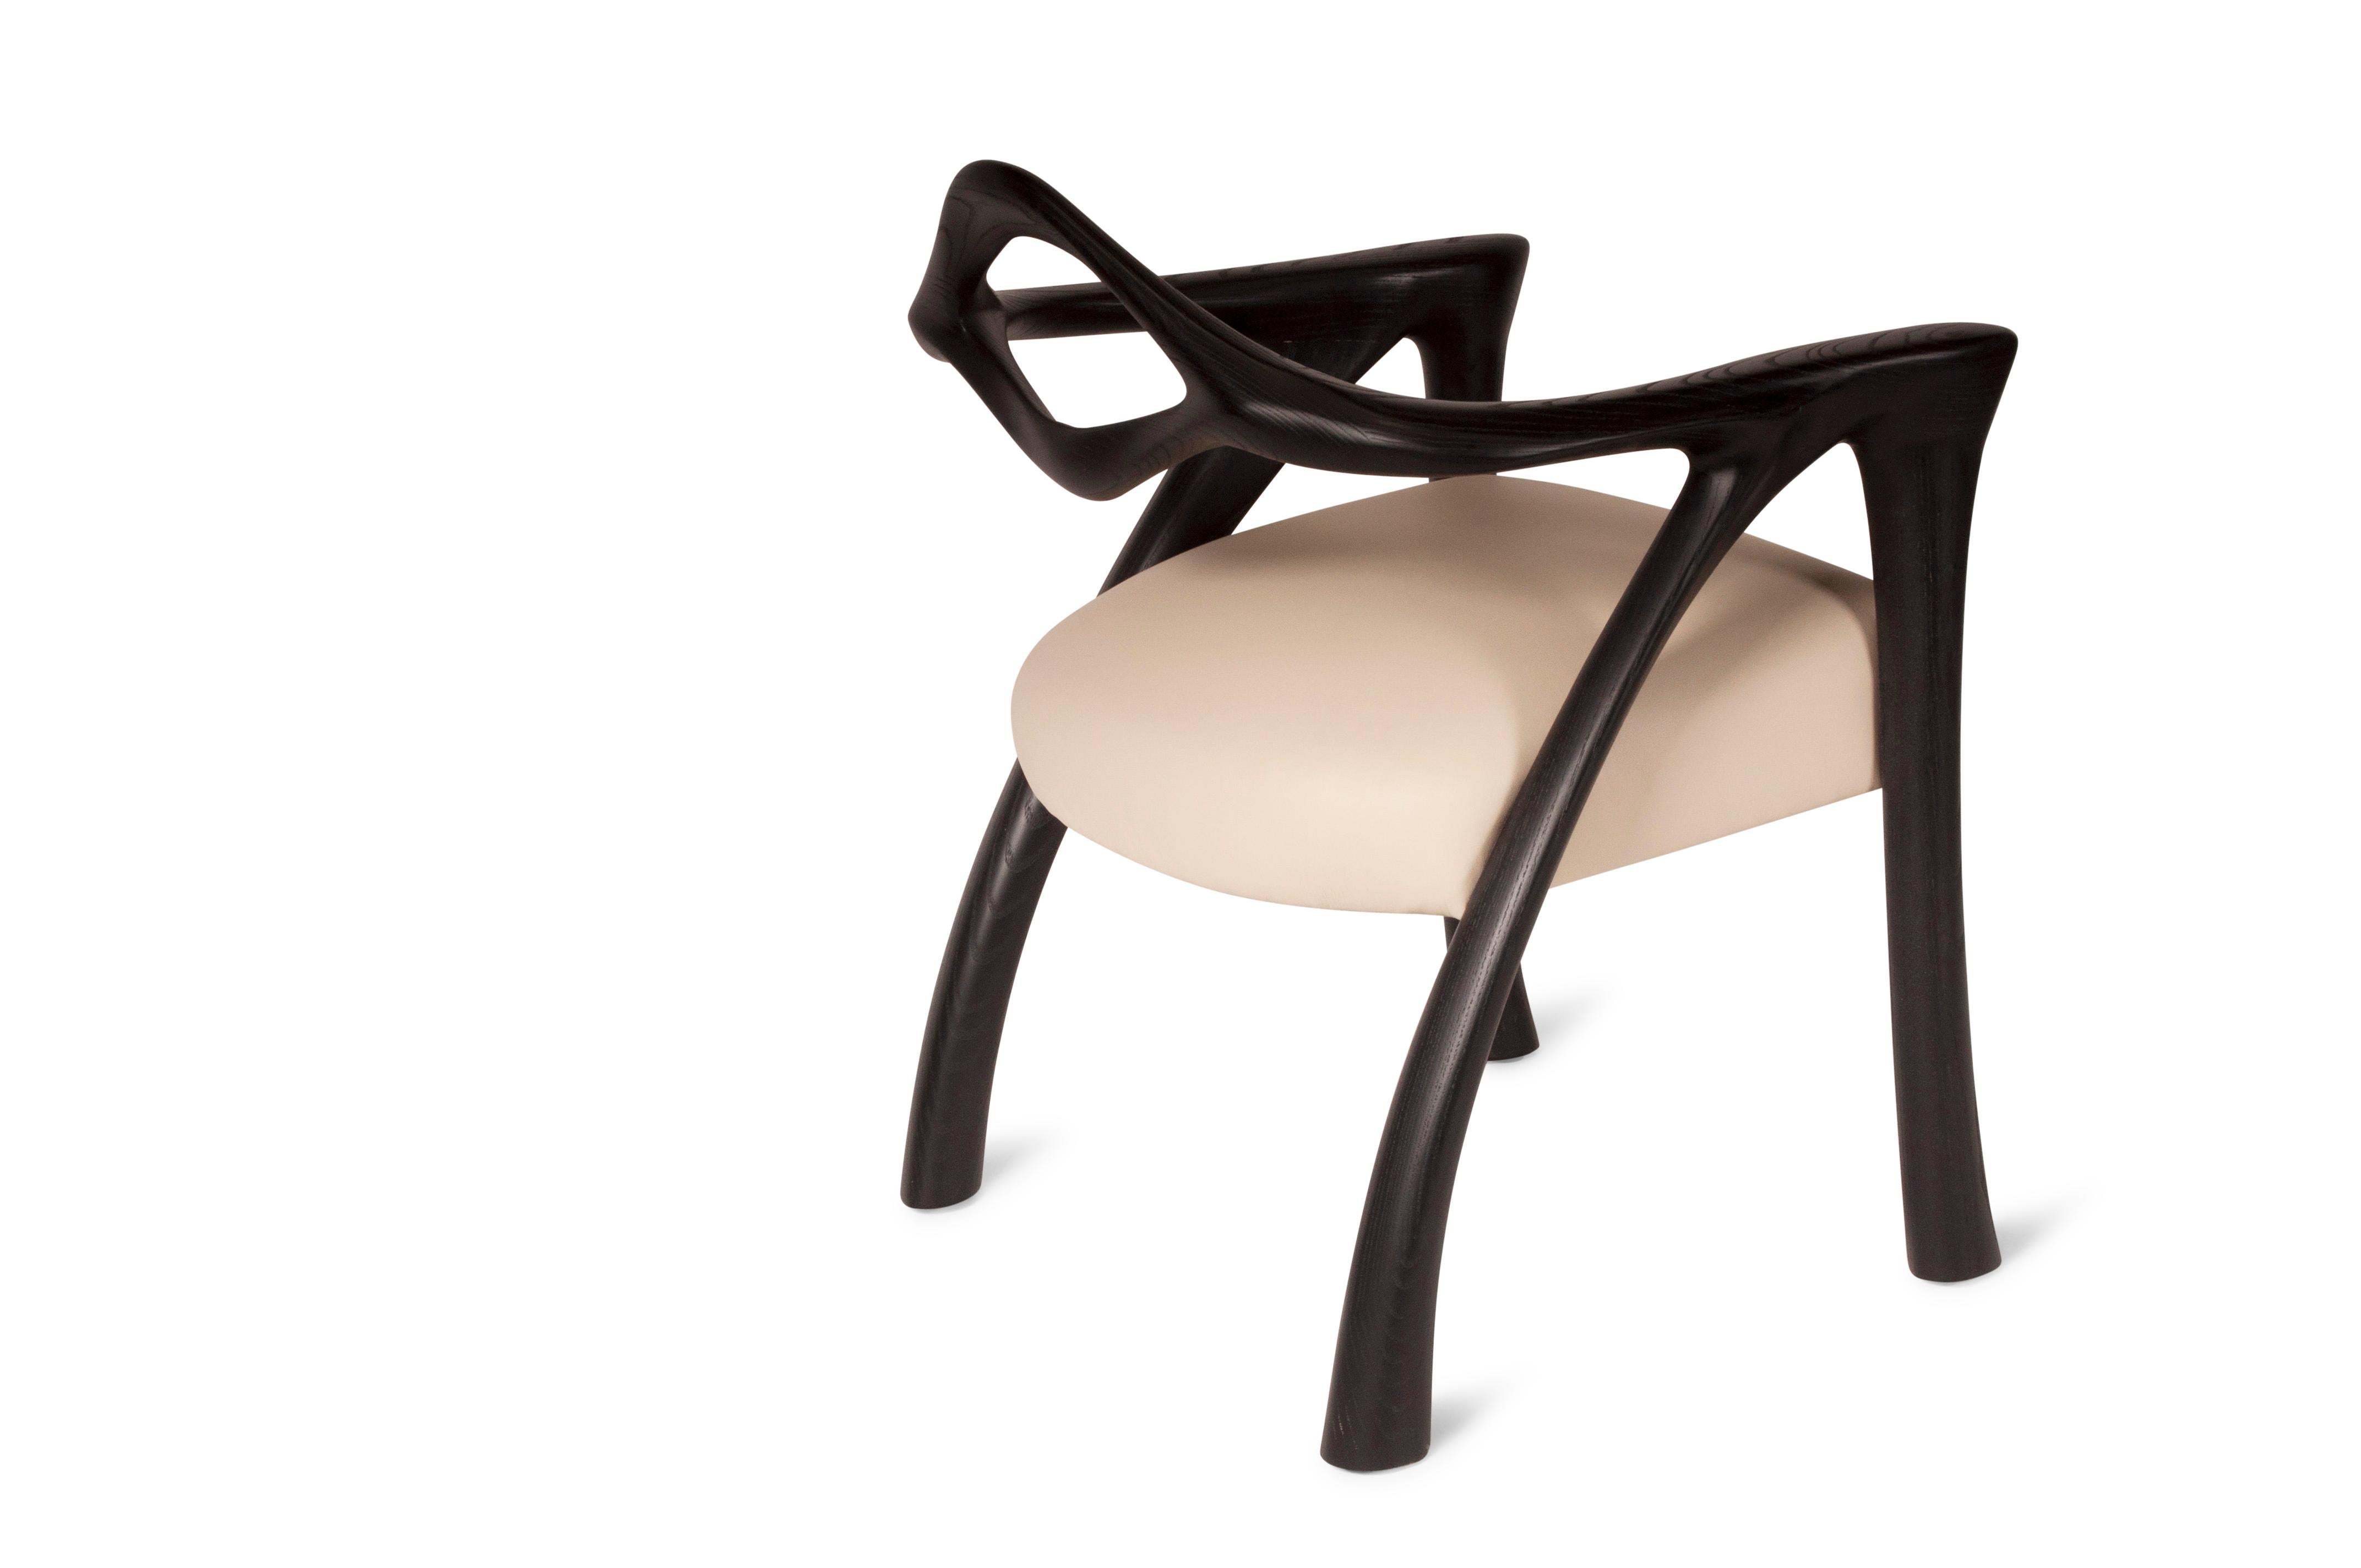 La chaise de salle à manger Darcey est fabriquée en bois de frêne avec du cuir blanc cassé.

À propos d'Amorph : 
Amorph est une société de conception et de fabrication basée à Los Angeles, en Californie. Nous sommes fiers de nos conceptions